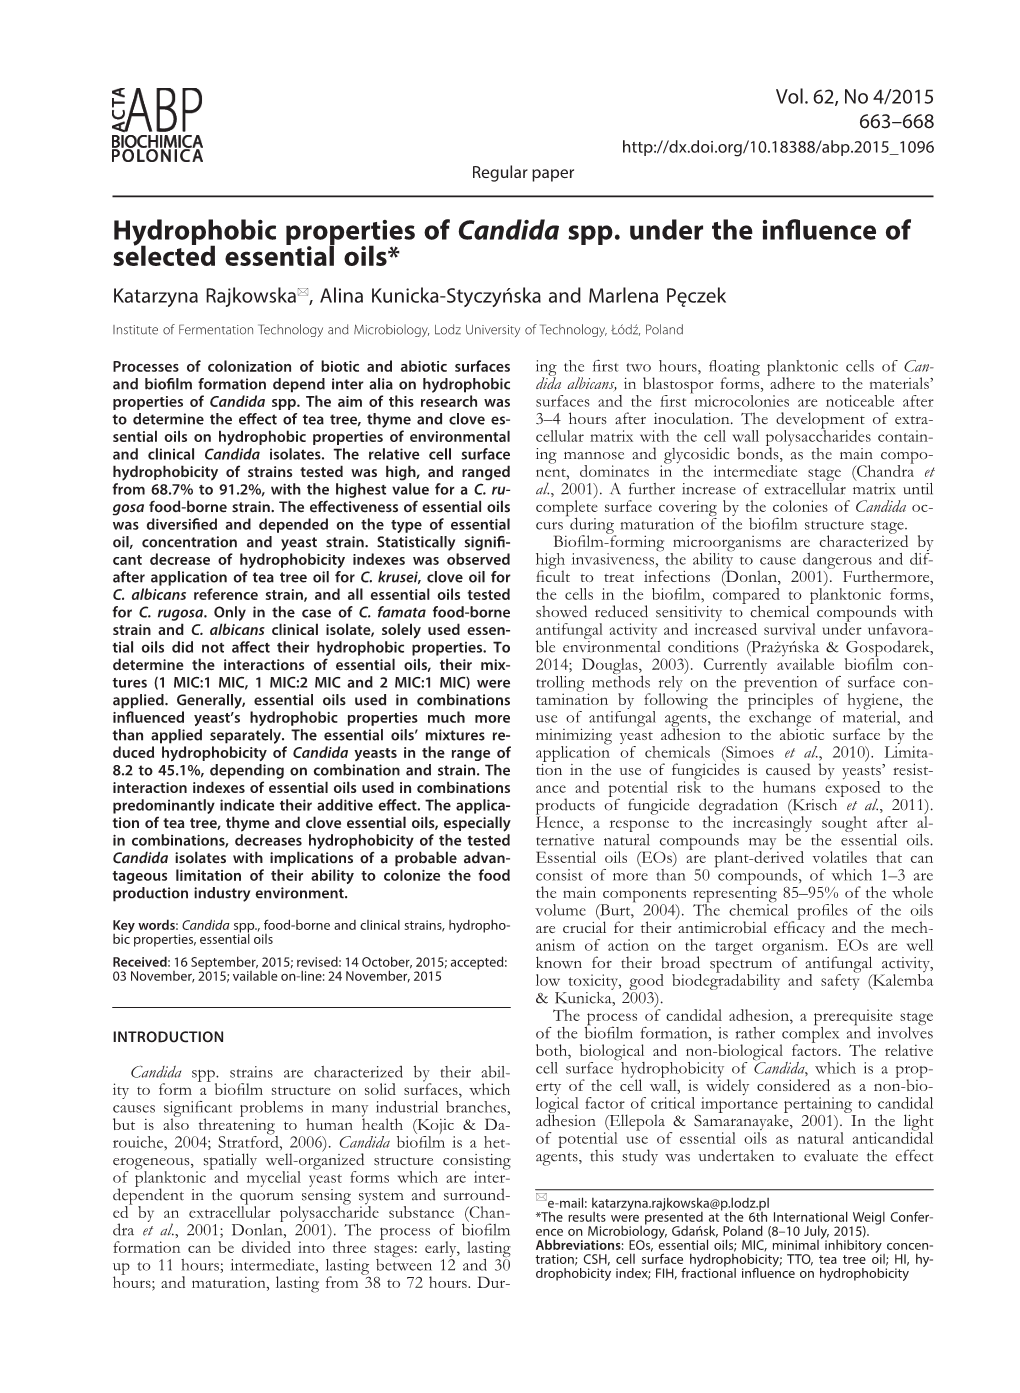 Hydrophobic Properties of Candida Spp. Under the Influence of Selected Essential Oils* Katarzyna Rajkowska*, Alina Kunicka-Styczyńska and Marlena Pęczek